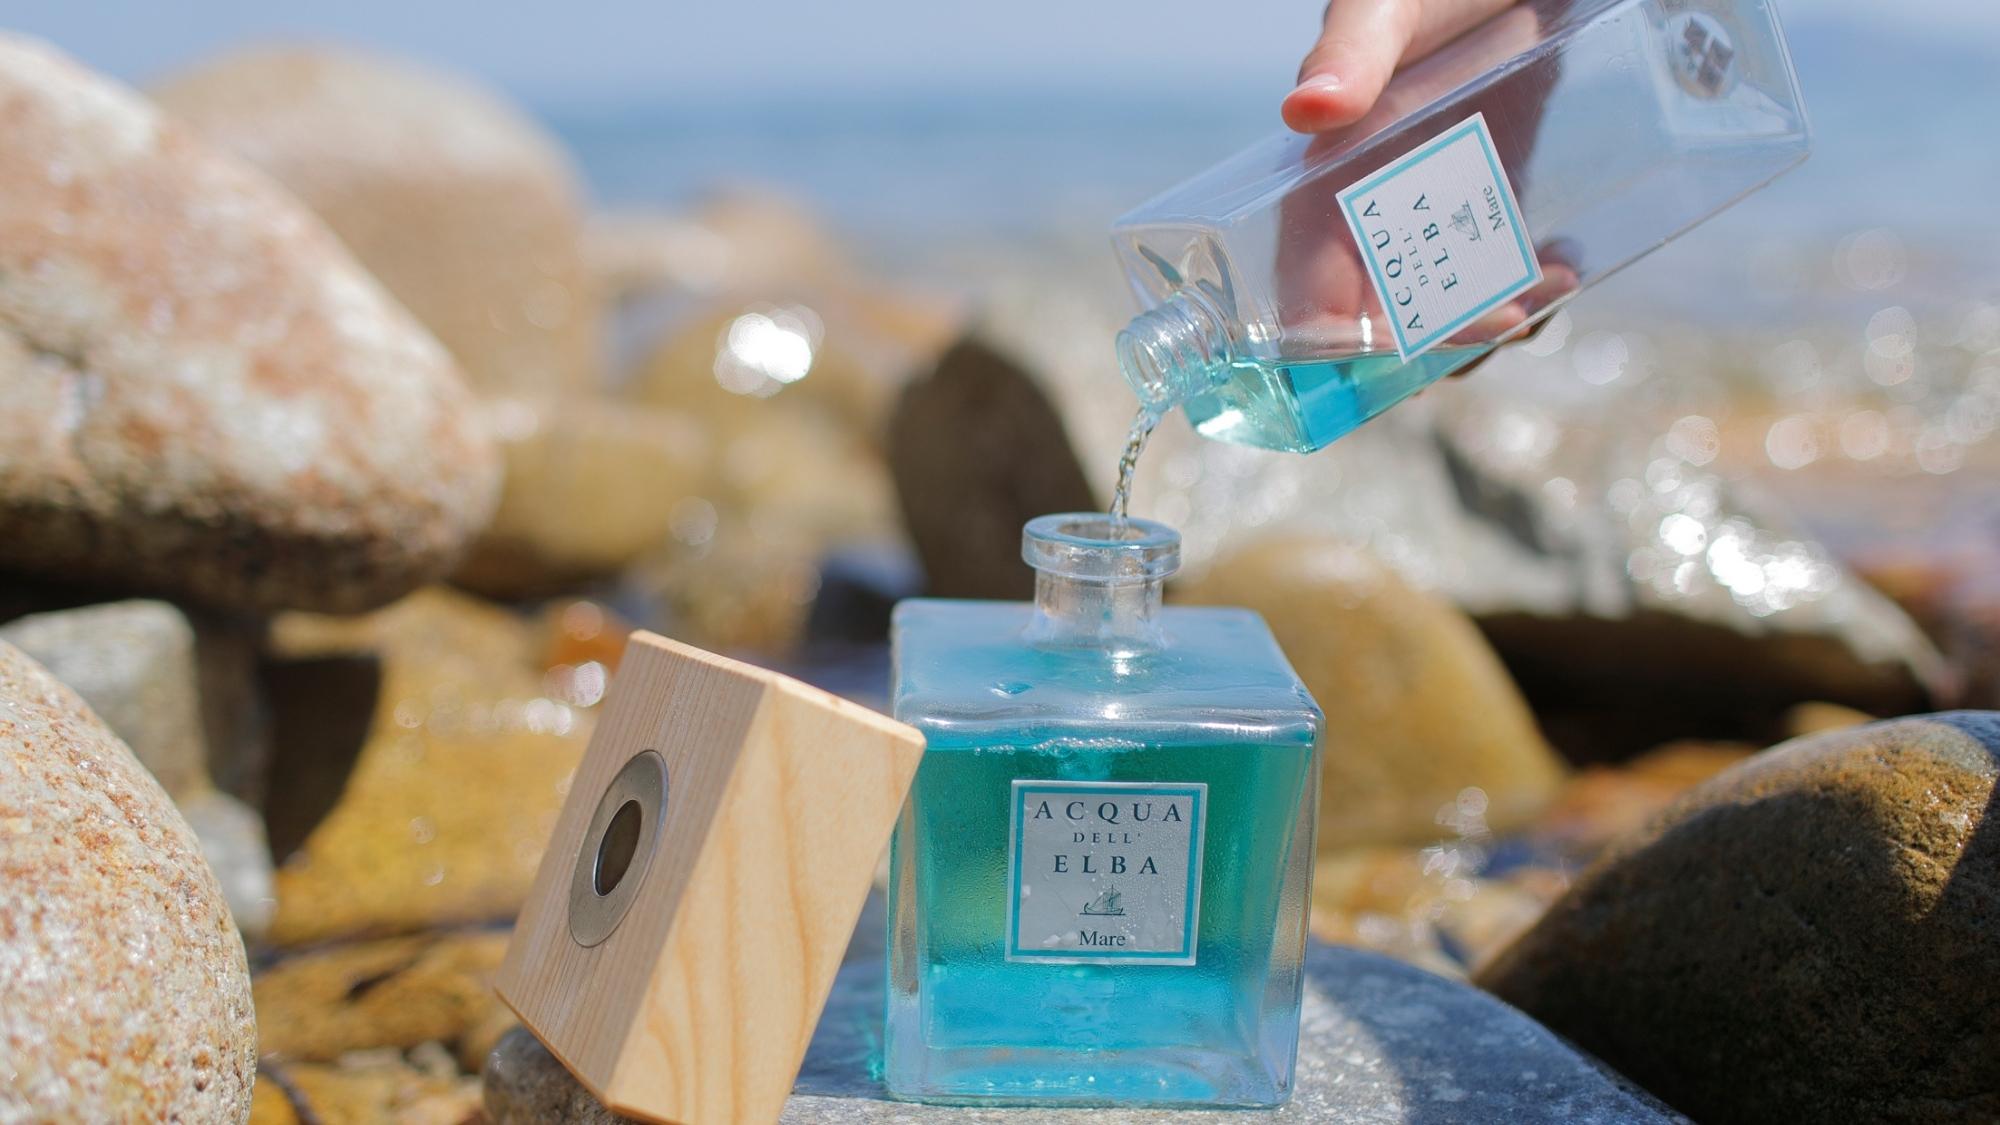 Home Fragrance Diffuser Refills from Acqua dell'Elba – Acqua dell